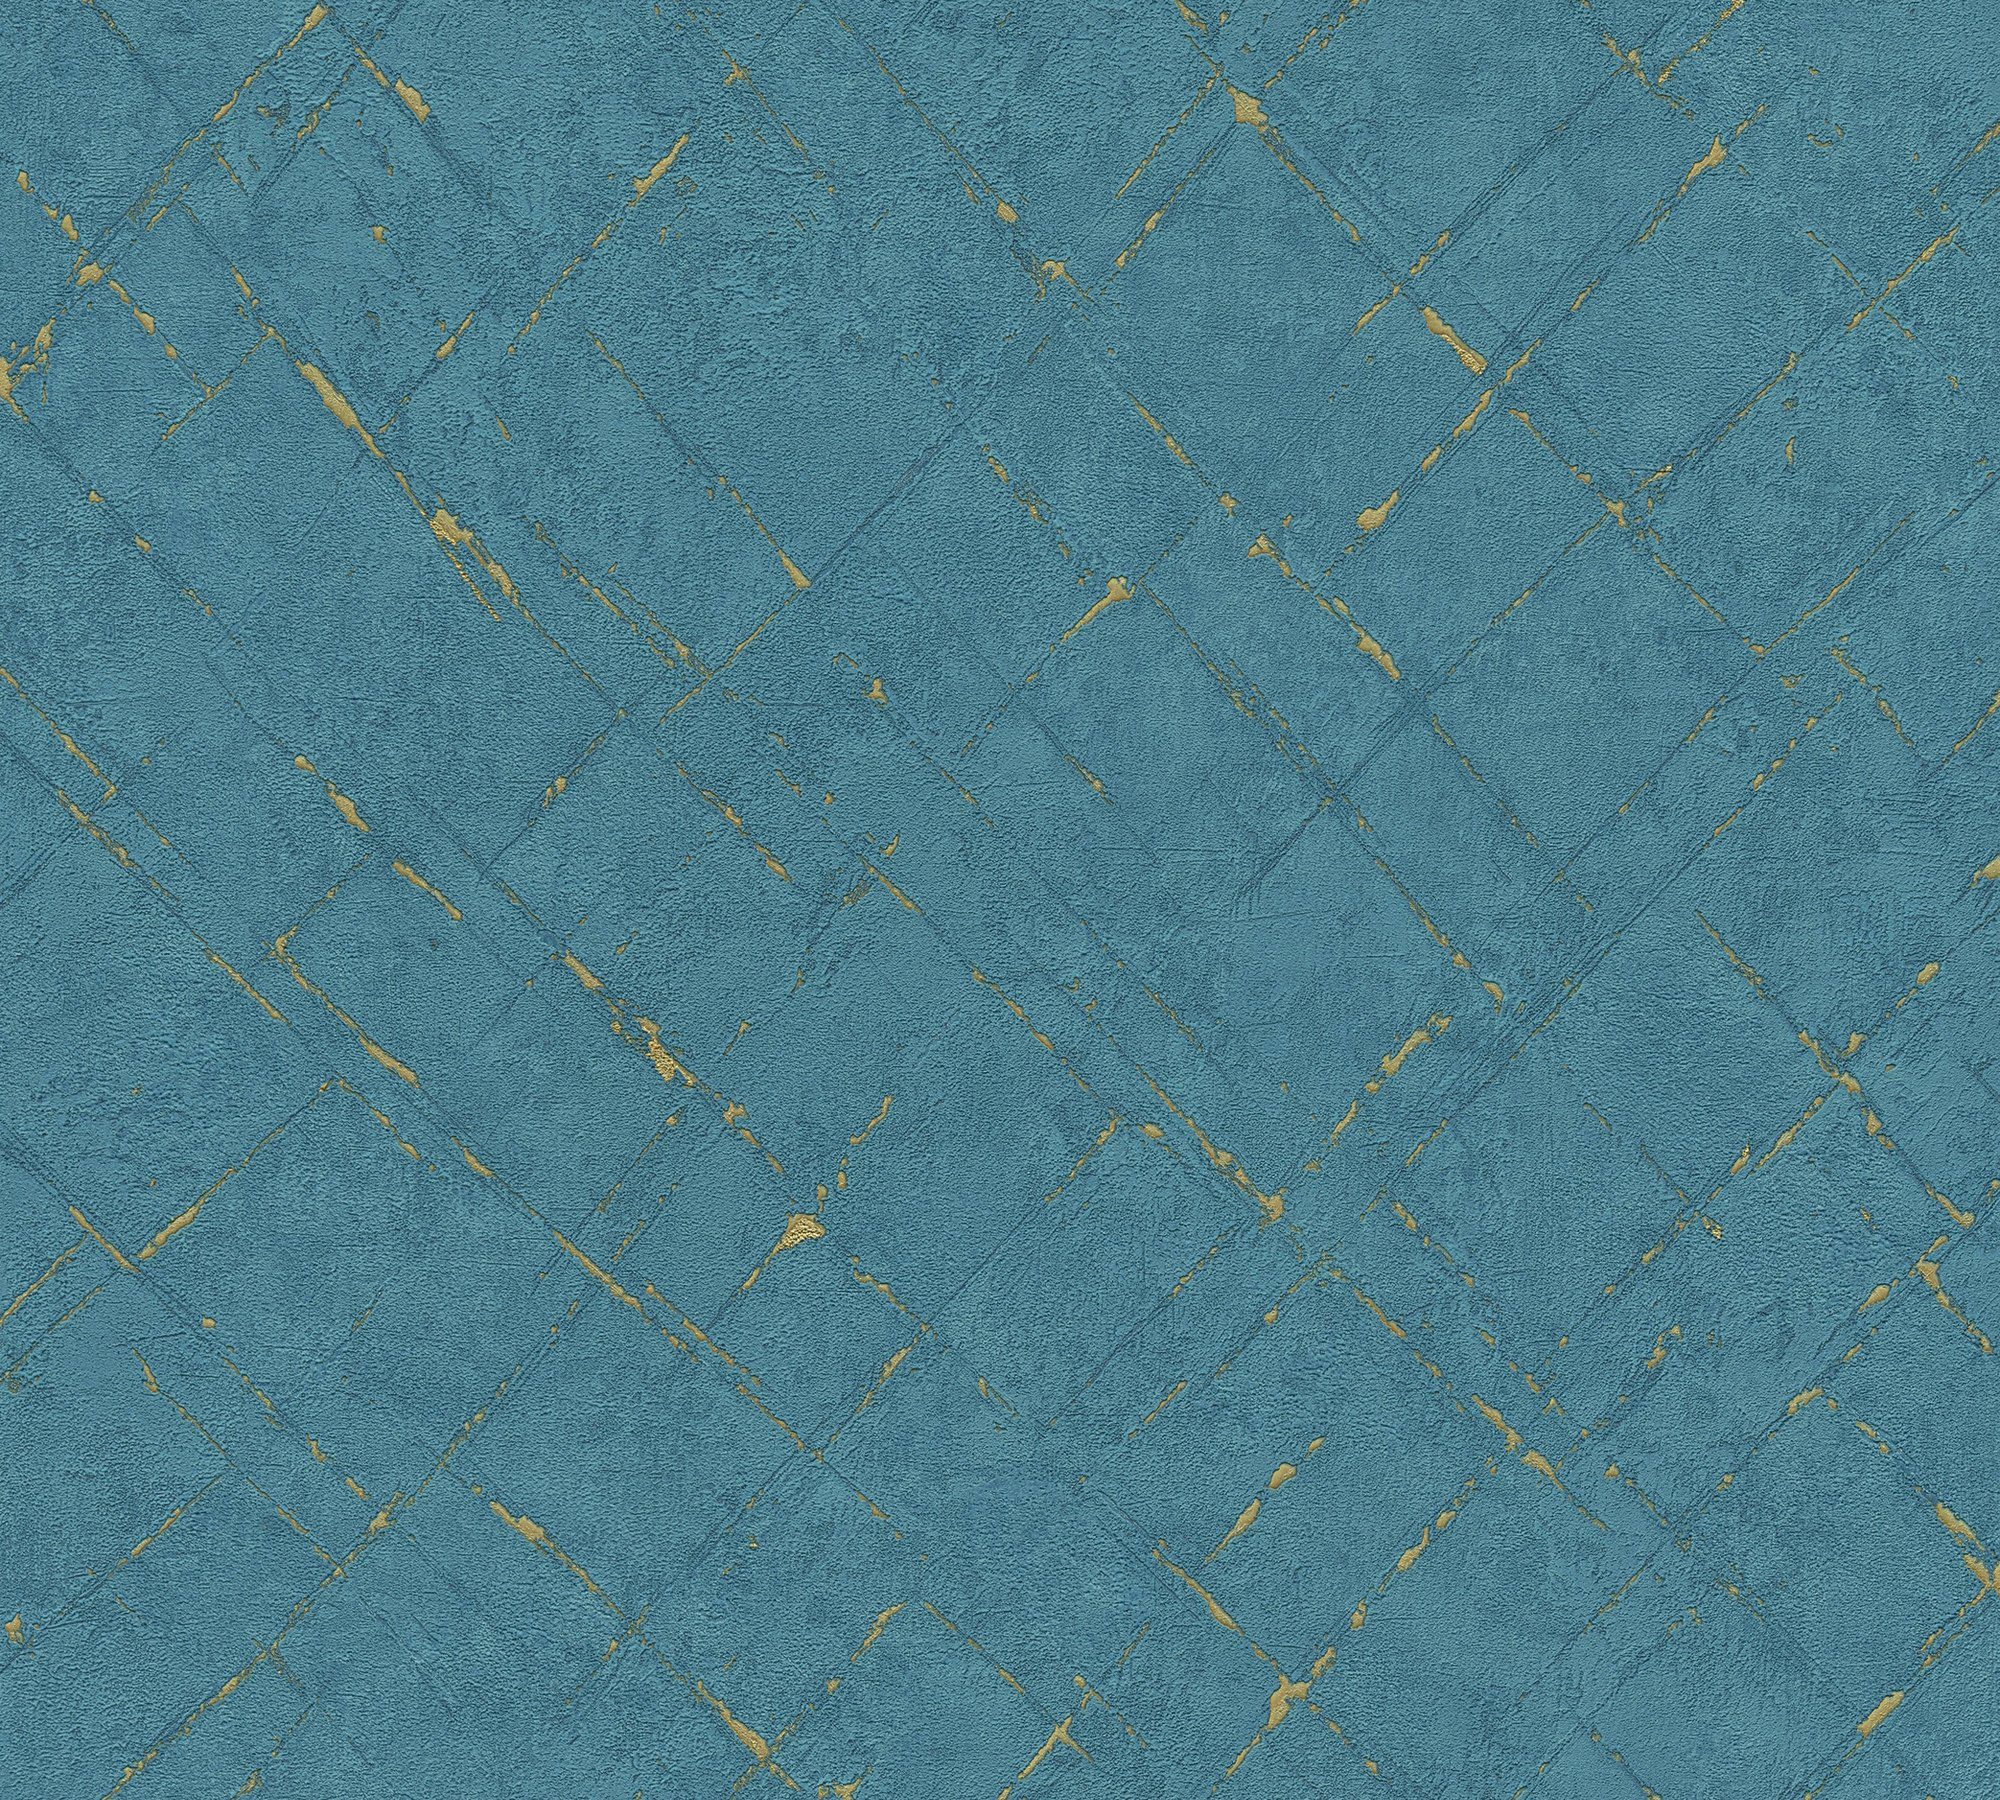 Création Vliestapete blau/gold Steinoptik Grafisch Farbeinsatz, unifarben strukturiert, mit Emotion Graphic, Tapete A.S.